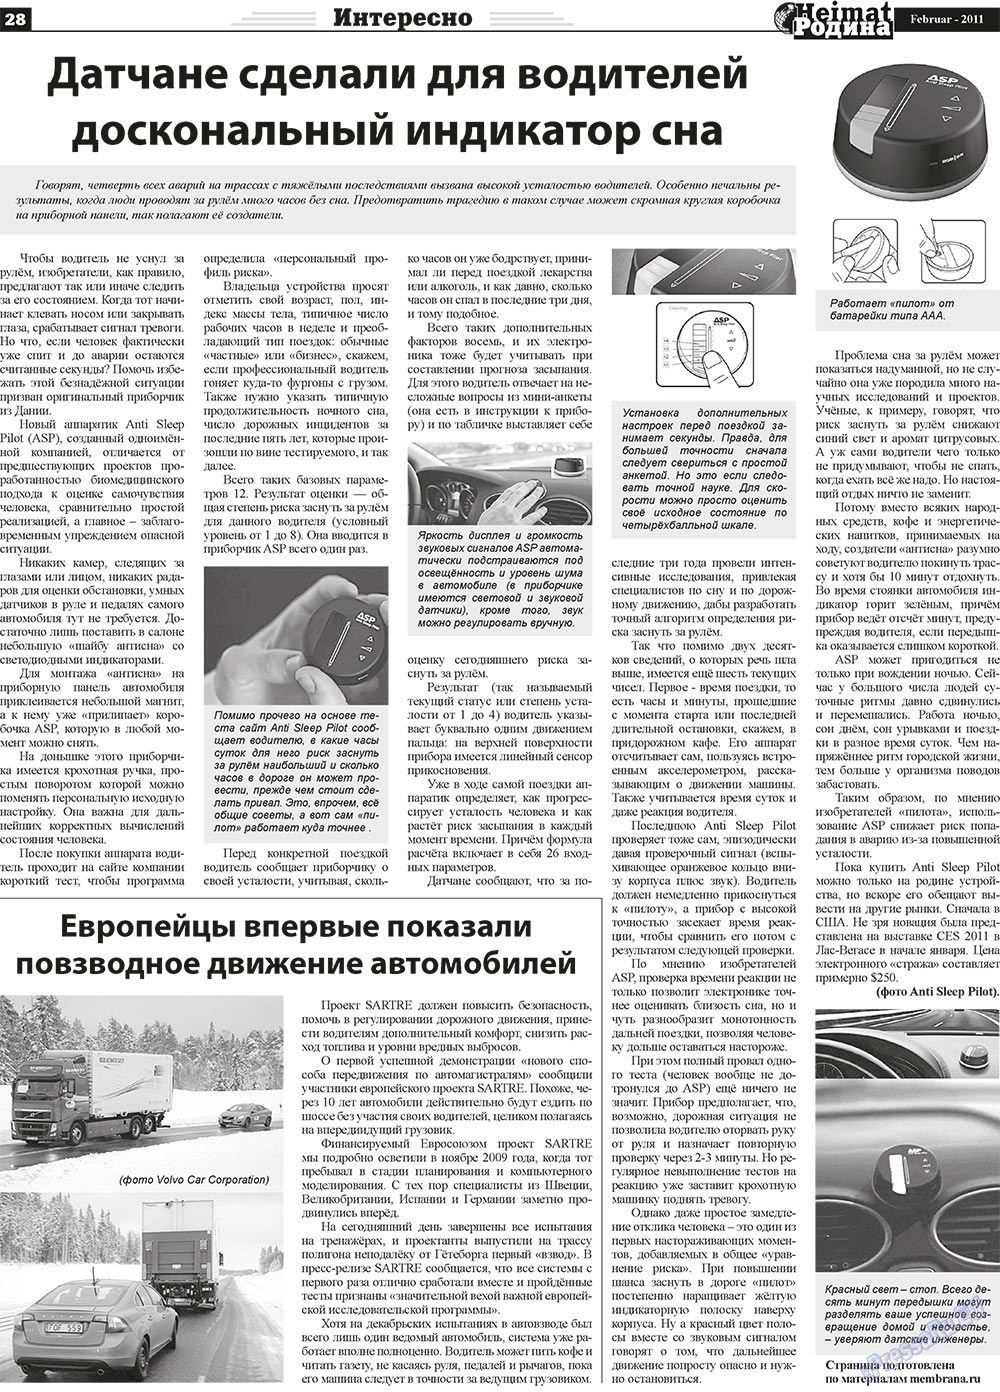 Heimat-Родина (газета). 2011 год, номер 2, стр. 28